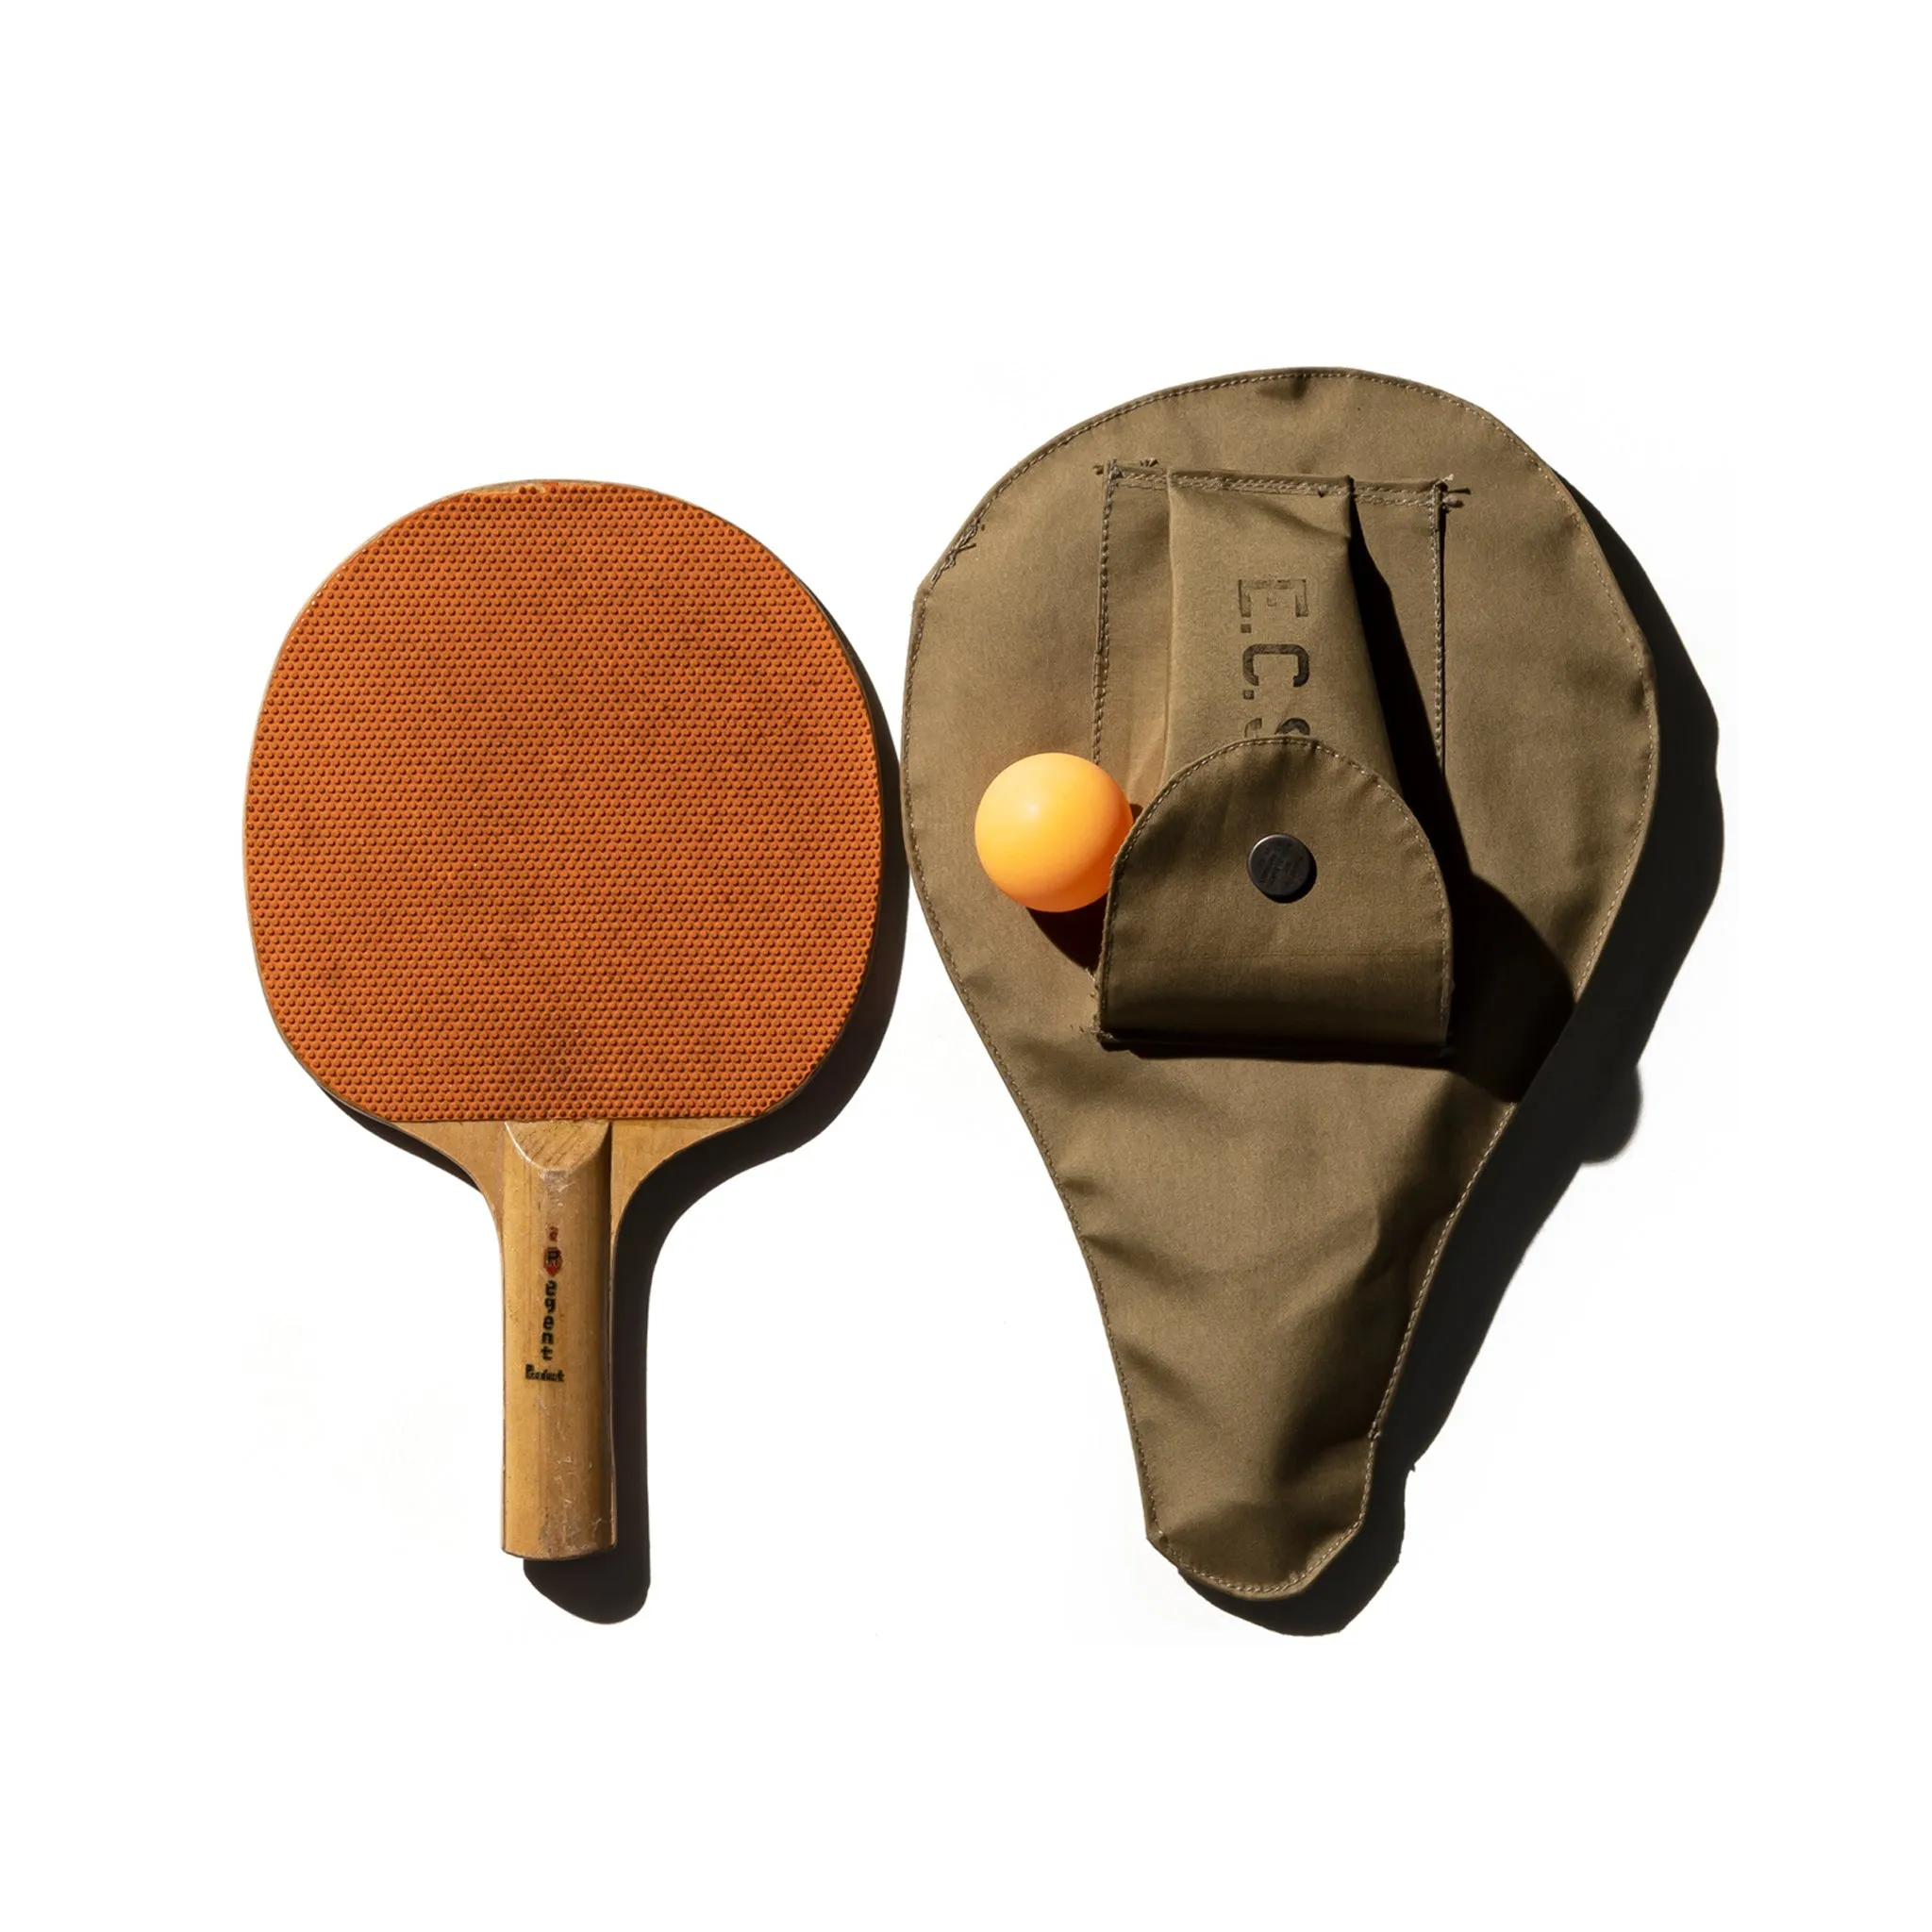 Portaracchette da ping pong in tessuto gommato sabbia